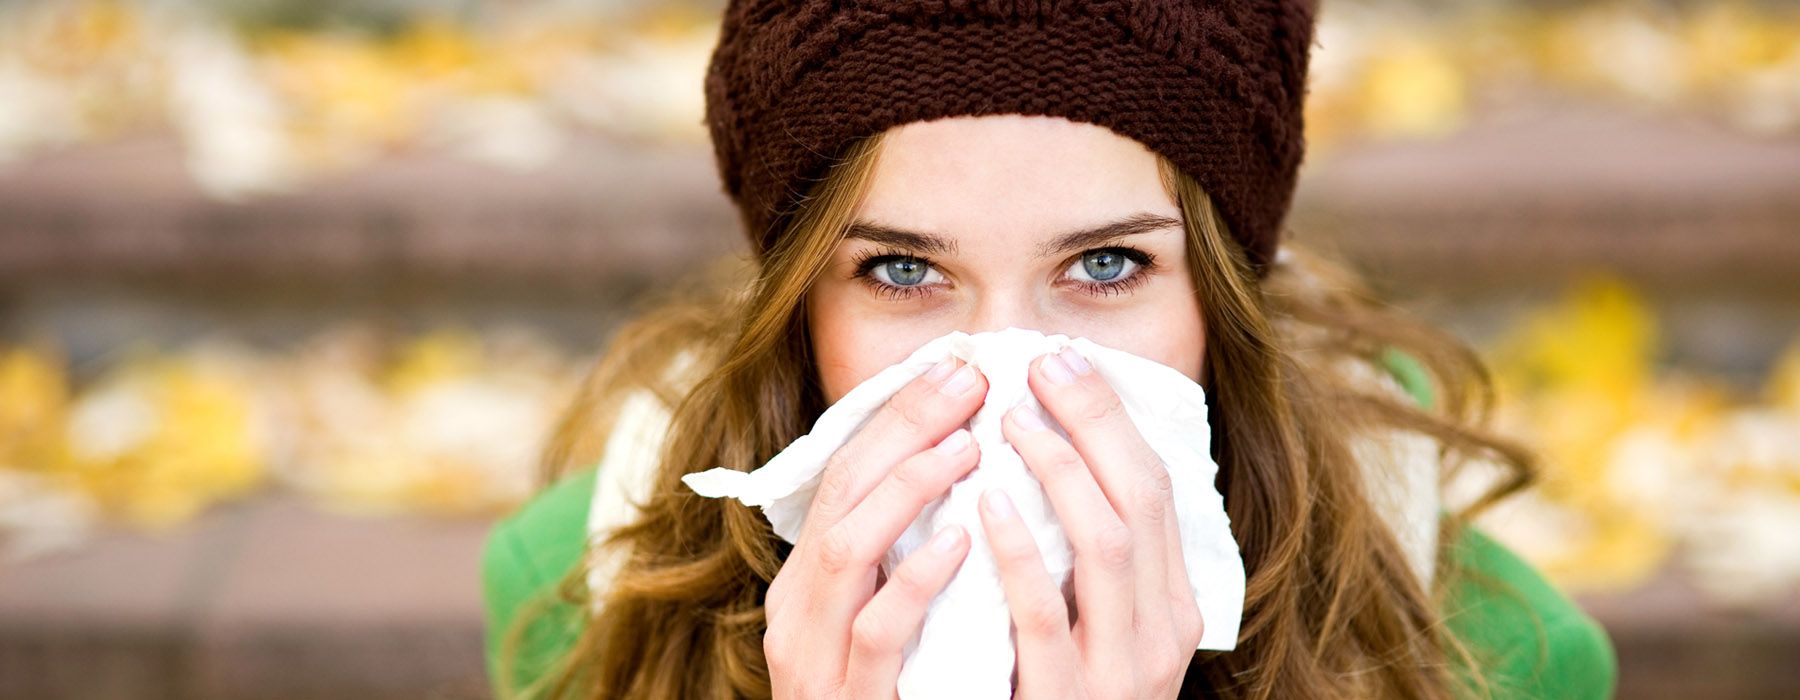 Come curare il raffreddore coi rimedi naturali